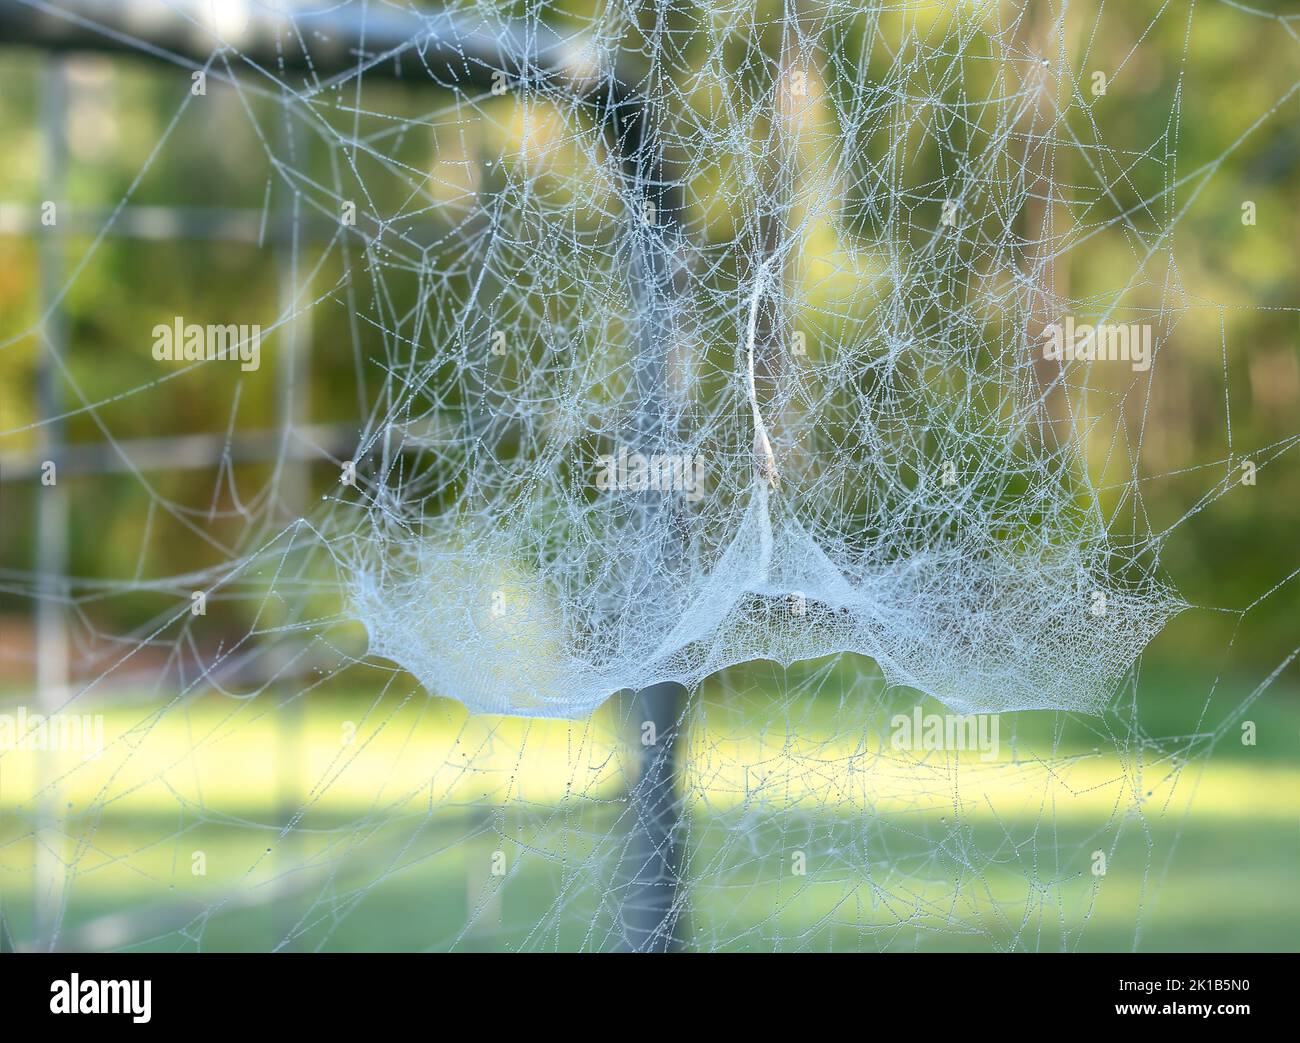 Kompliziertes Detail eines zarten Spinnennetzes, das mit frühmorgendlichen Tautropfen bedeckt ist, die wie Perlenketten aussehen. Stockfoto